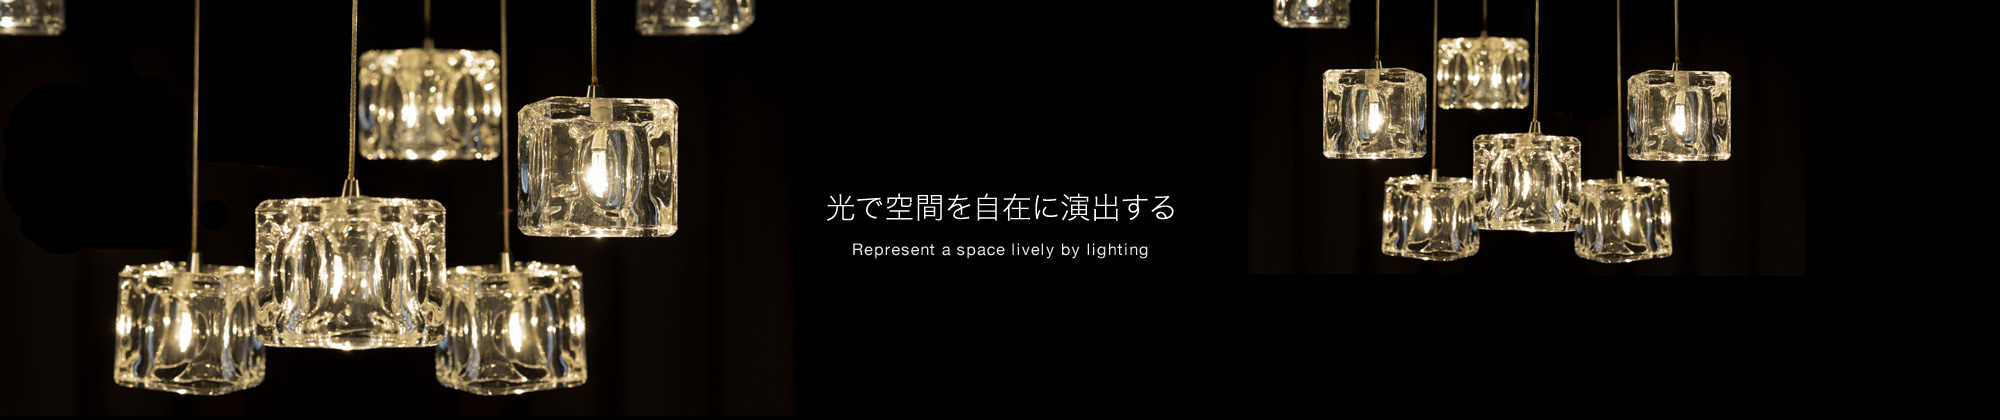 光で空間を自在に演出するI direct space by light freely